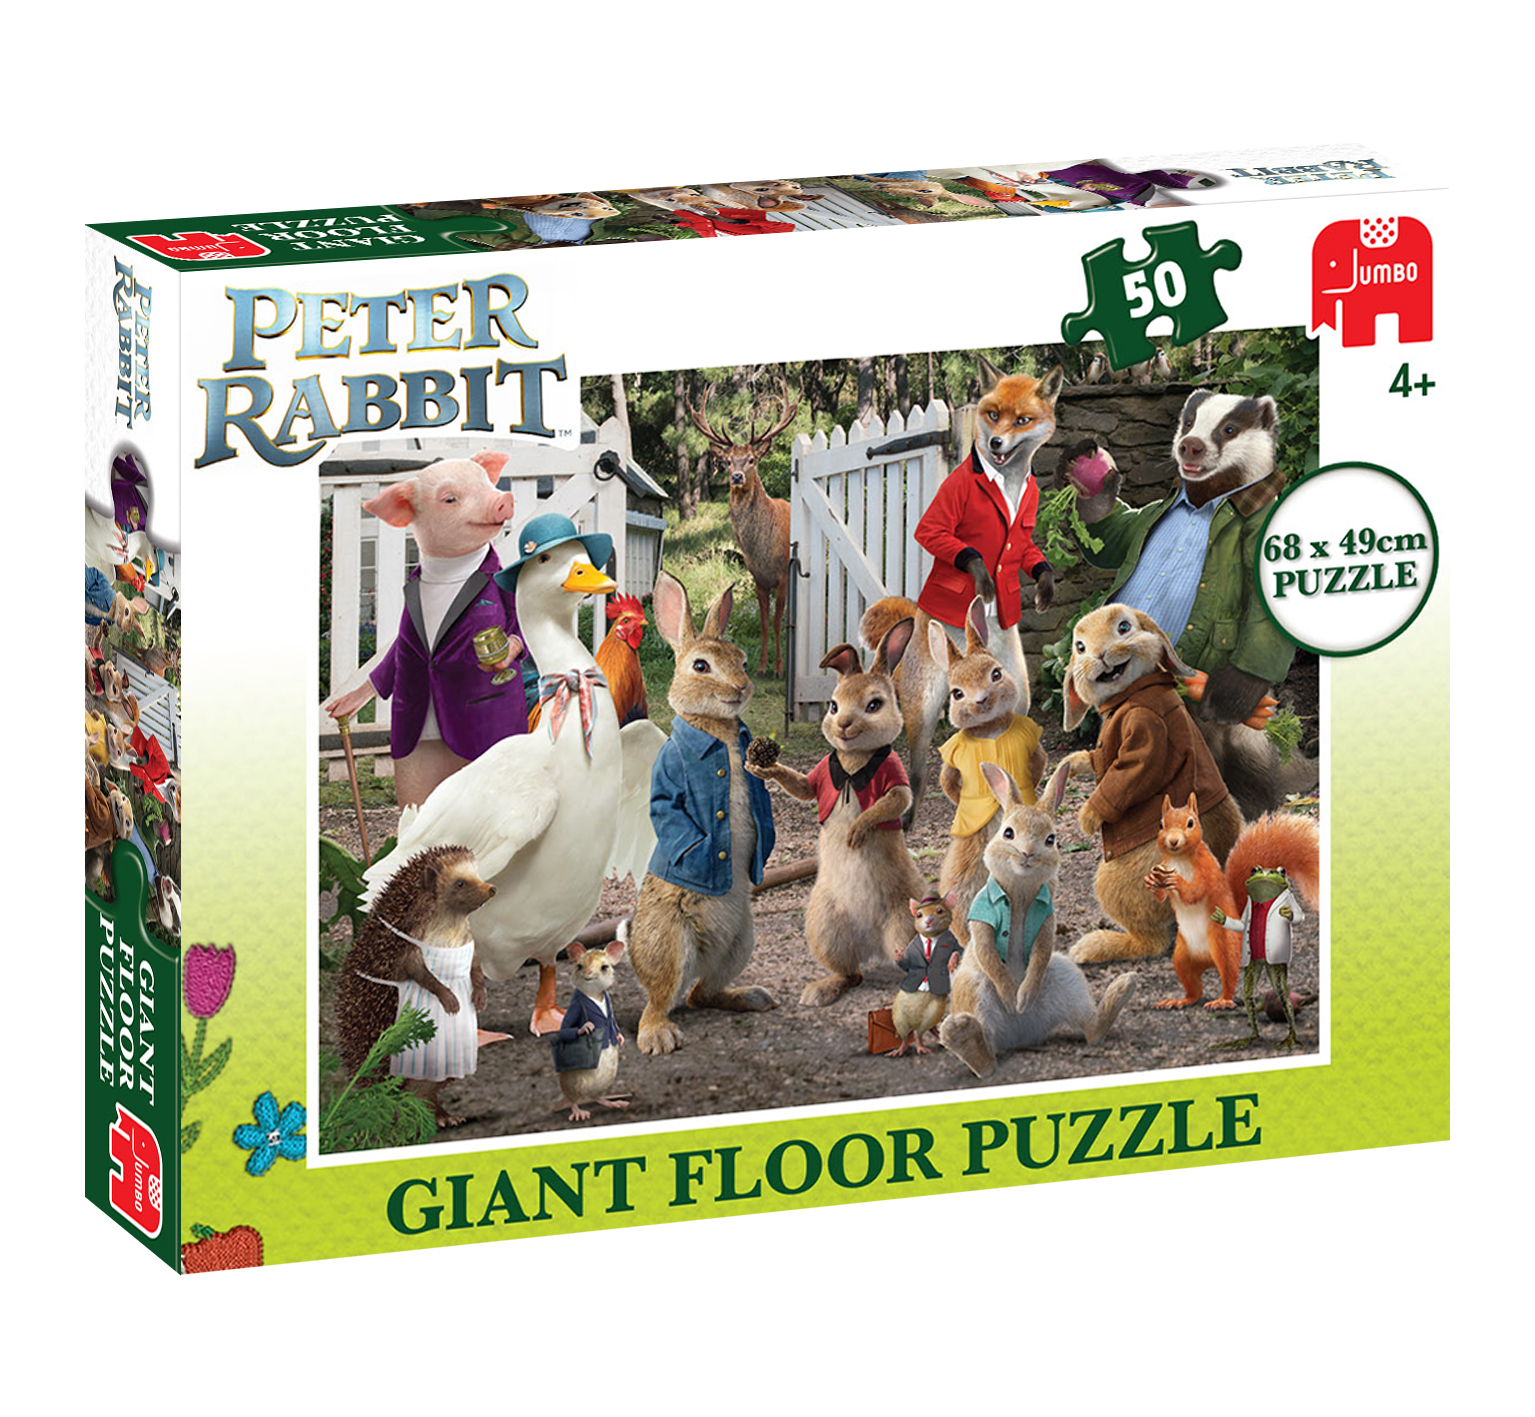 Peter Rabbit giant floor puzzle